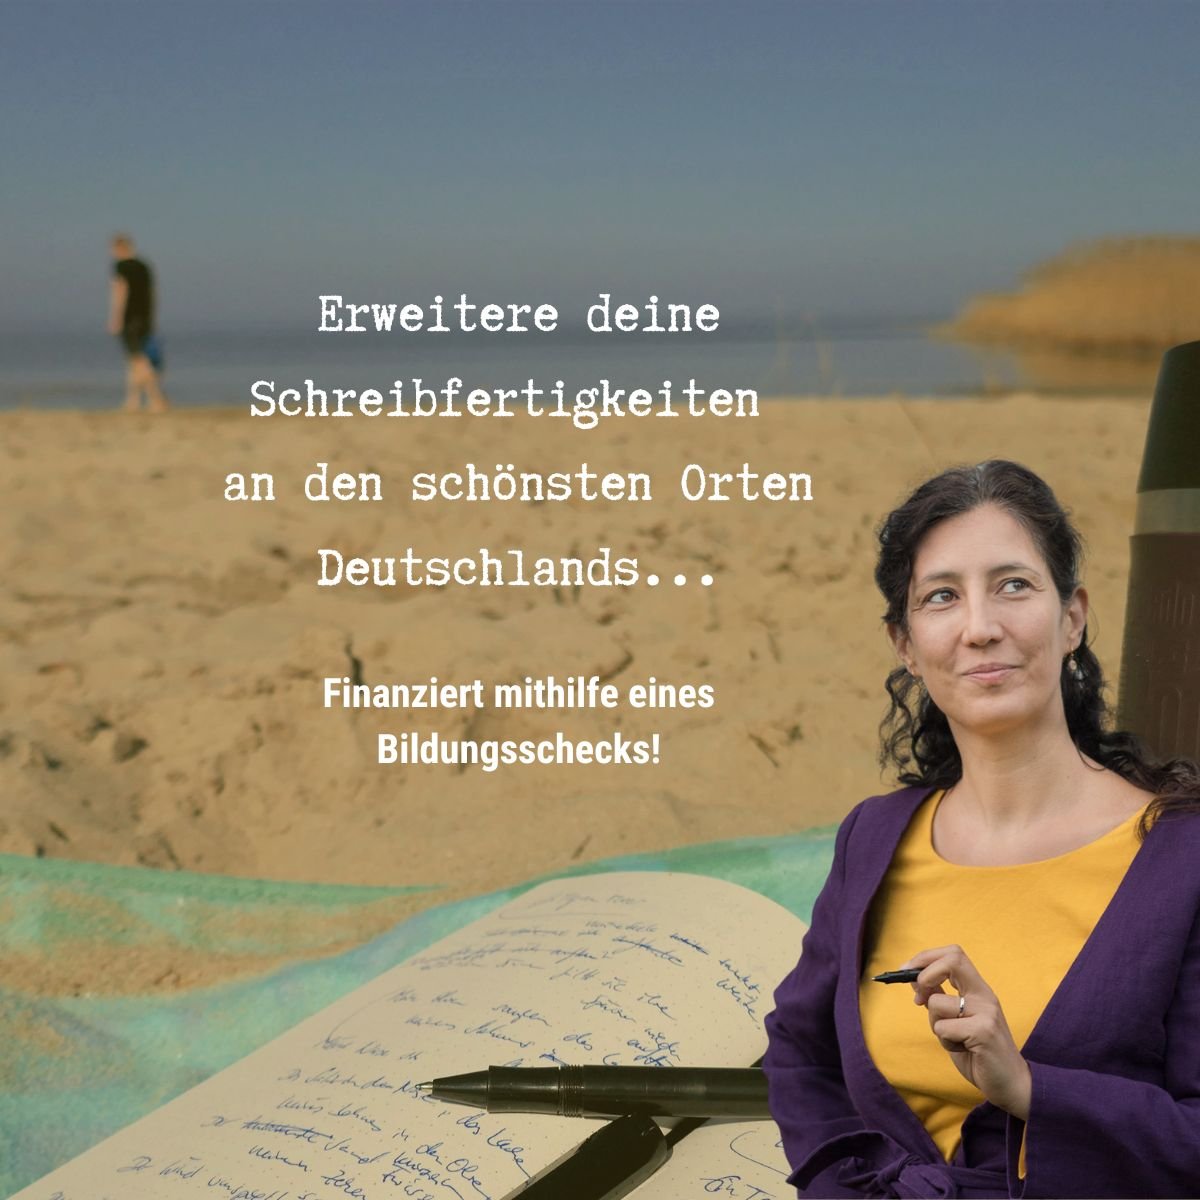 Das Meer im Hintergrund, Tina Lauer vorne. Oben steht: Erweitere deine Schreibkompetenz an den schönsten Orten Deutschlands. Finanziert durch einen Bildungsscheck!